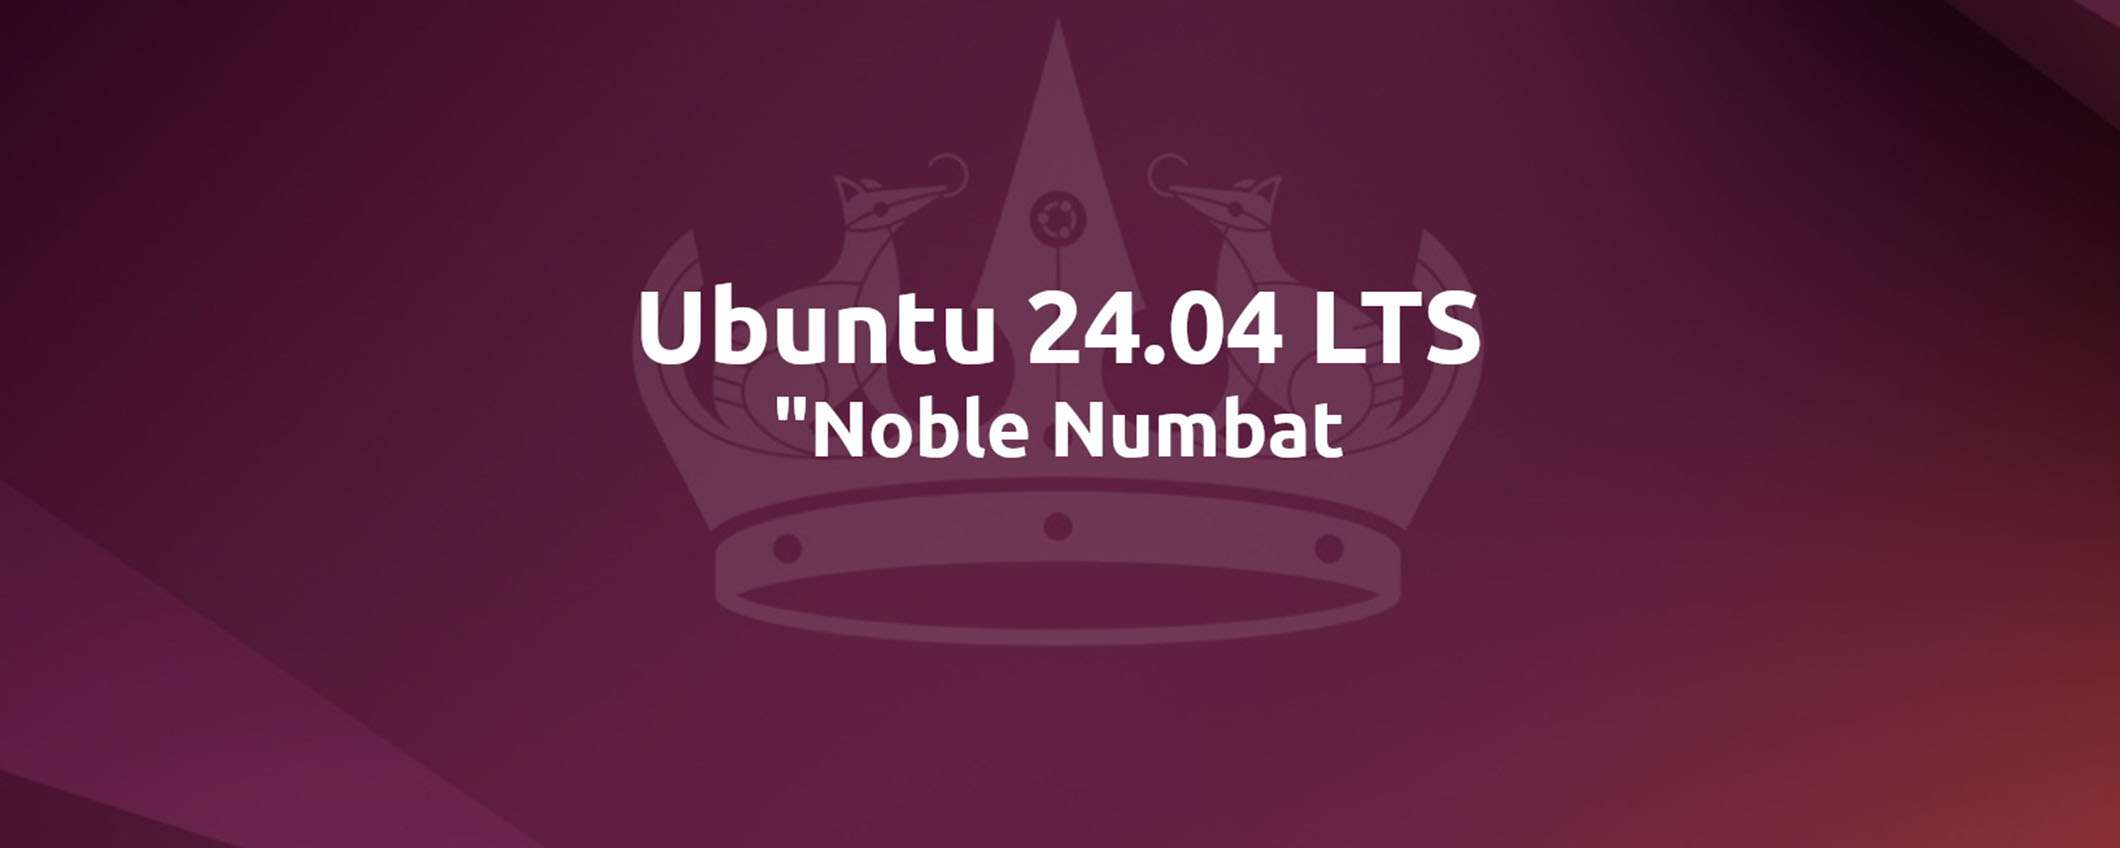 Aggiornamento a Ubuntu 24.04 LTS ufficialmente abilitato